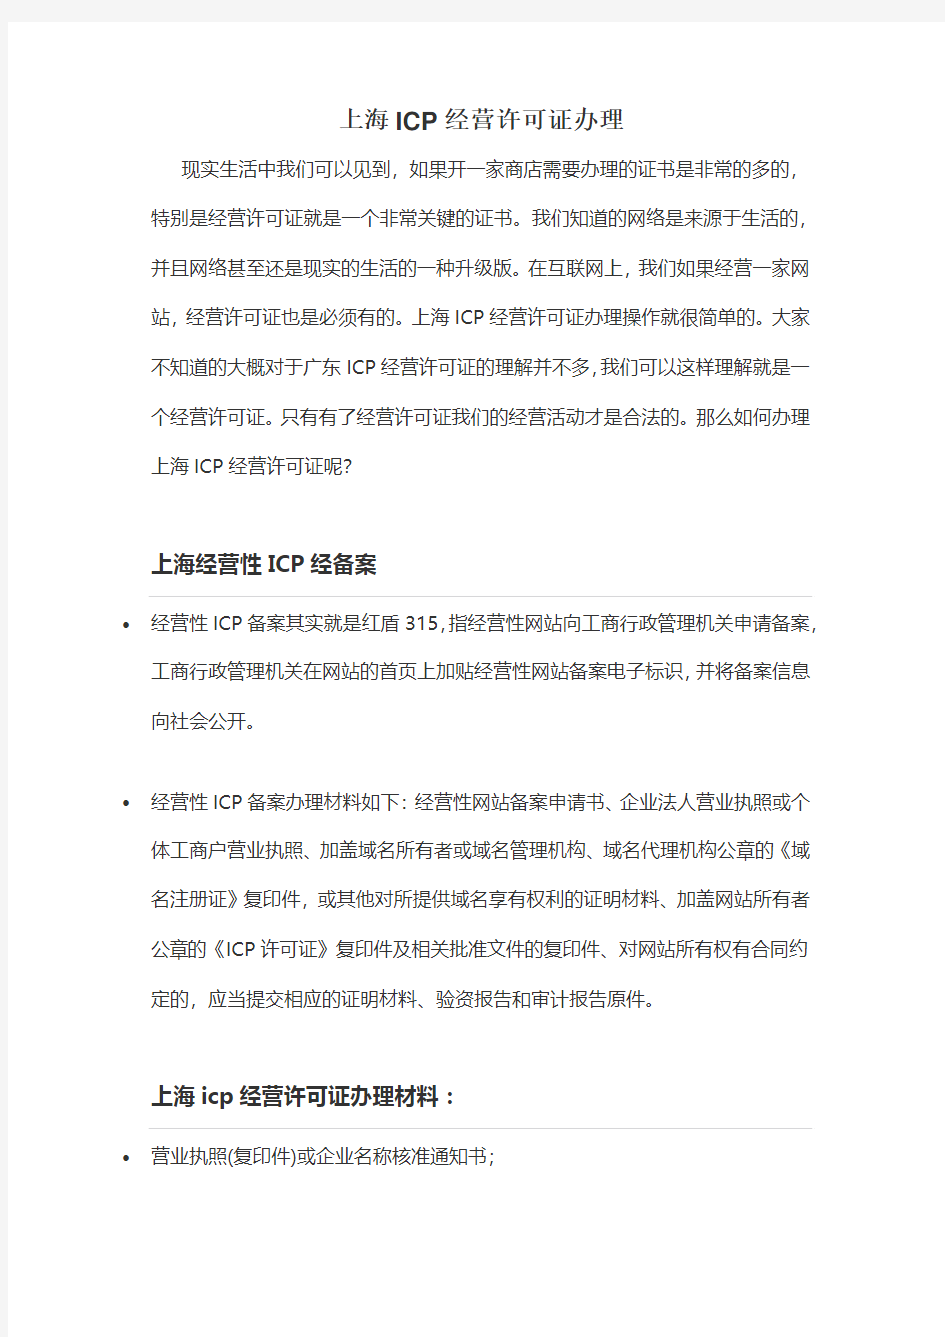 上海ICP经营许可证办理